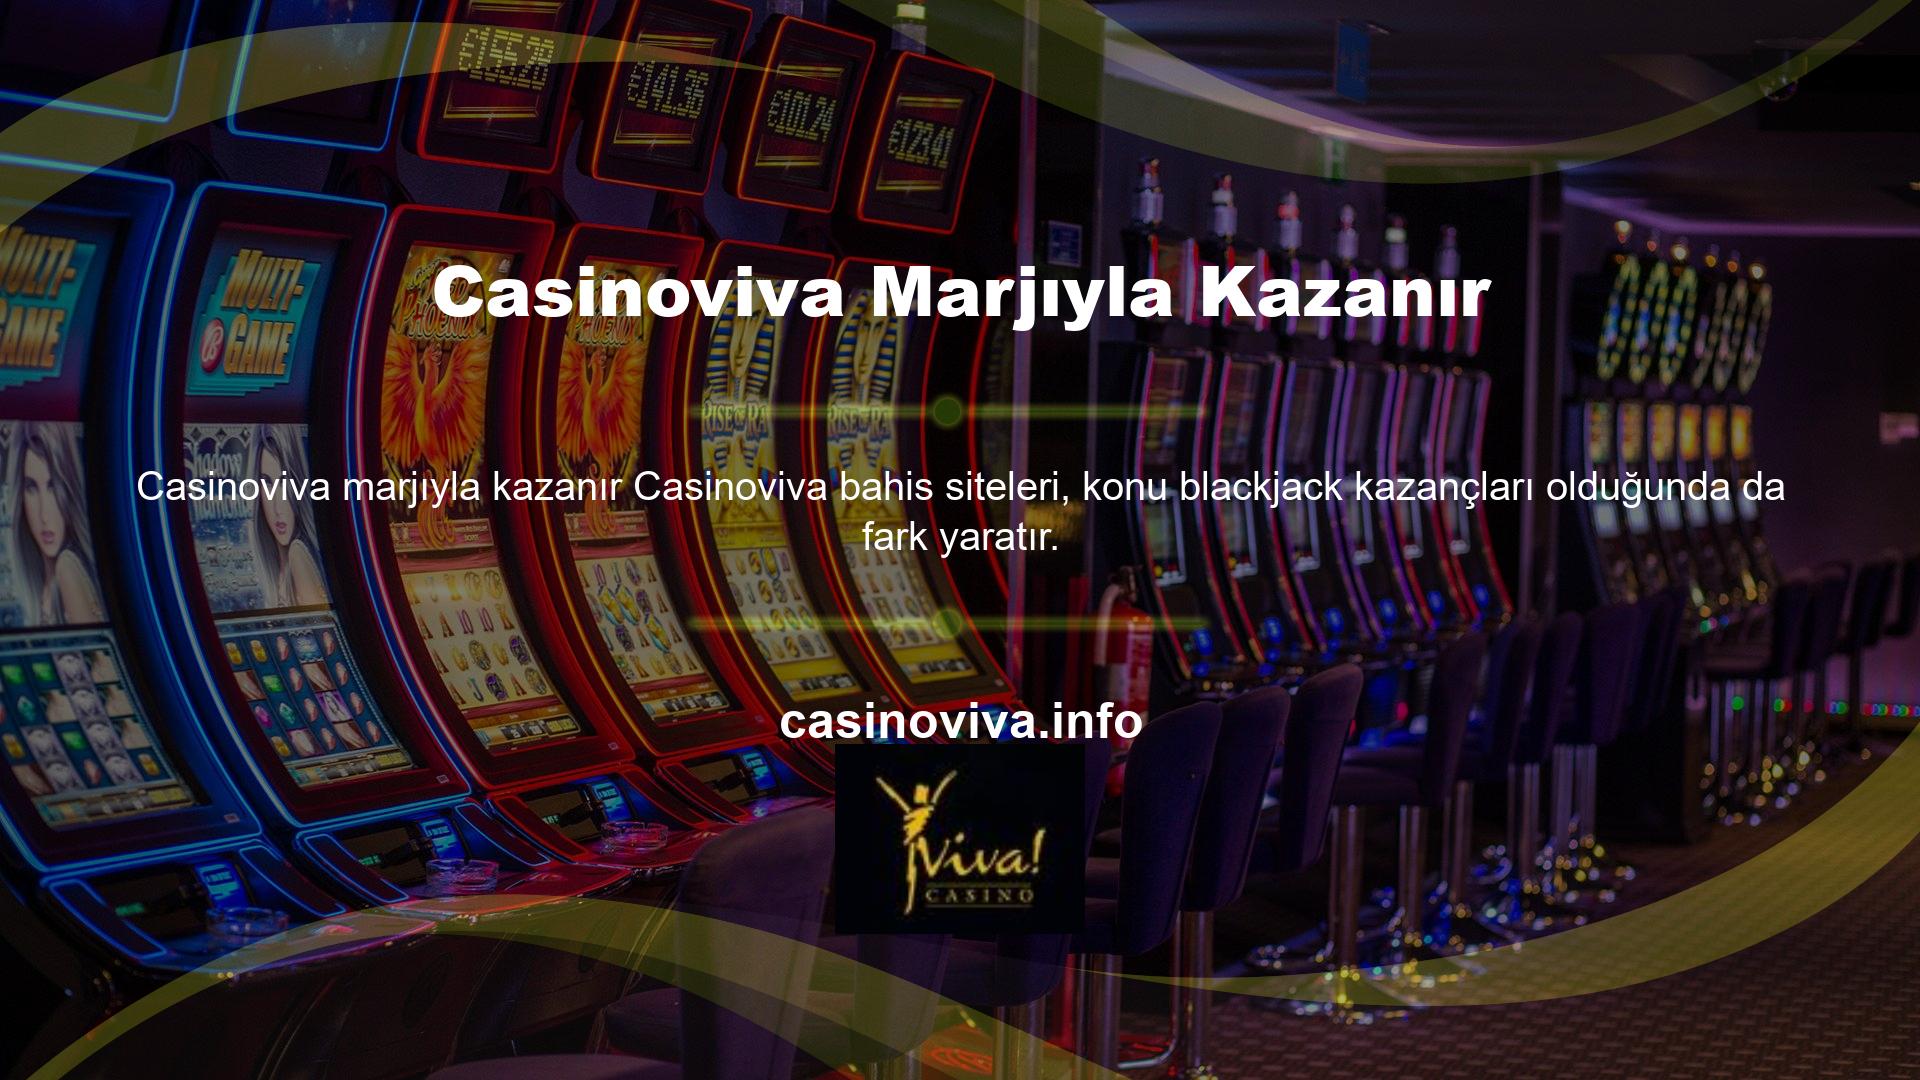 Casinoviva bahis sitesinin güvenilirliği, sağlam altyapısı ve birinci sınıf hizmeti sayesinde bu özellikten rahatlıkla yararlanabilirsiniz